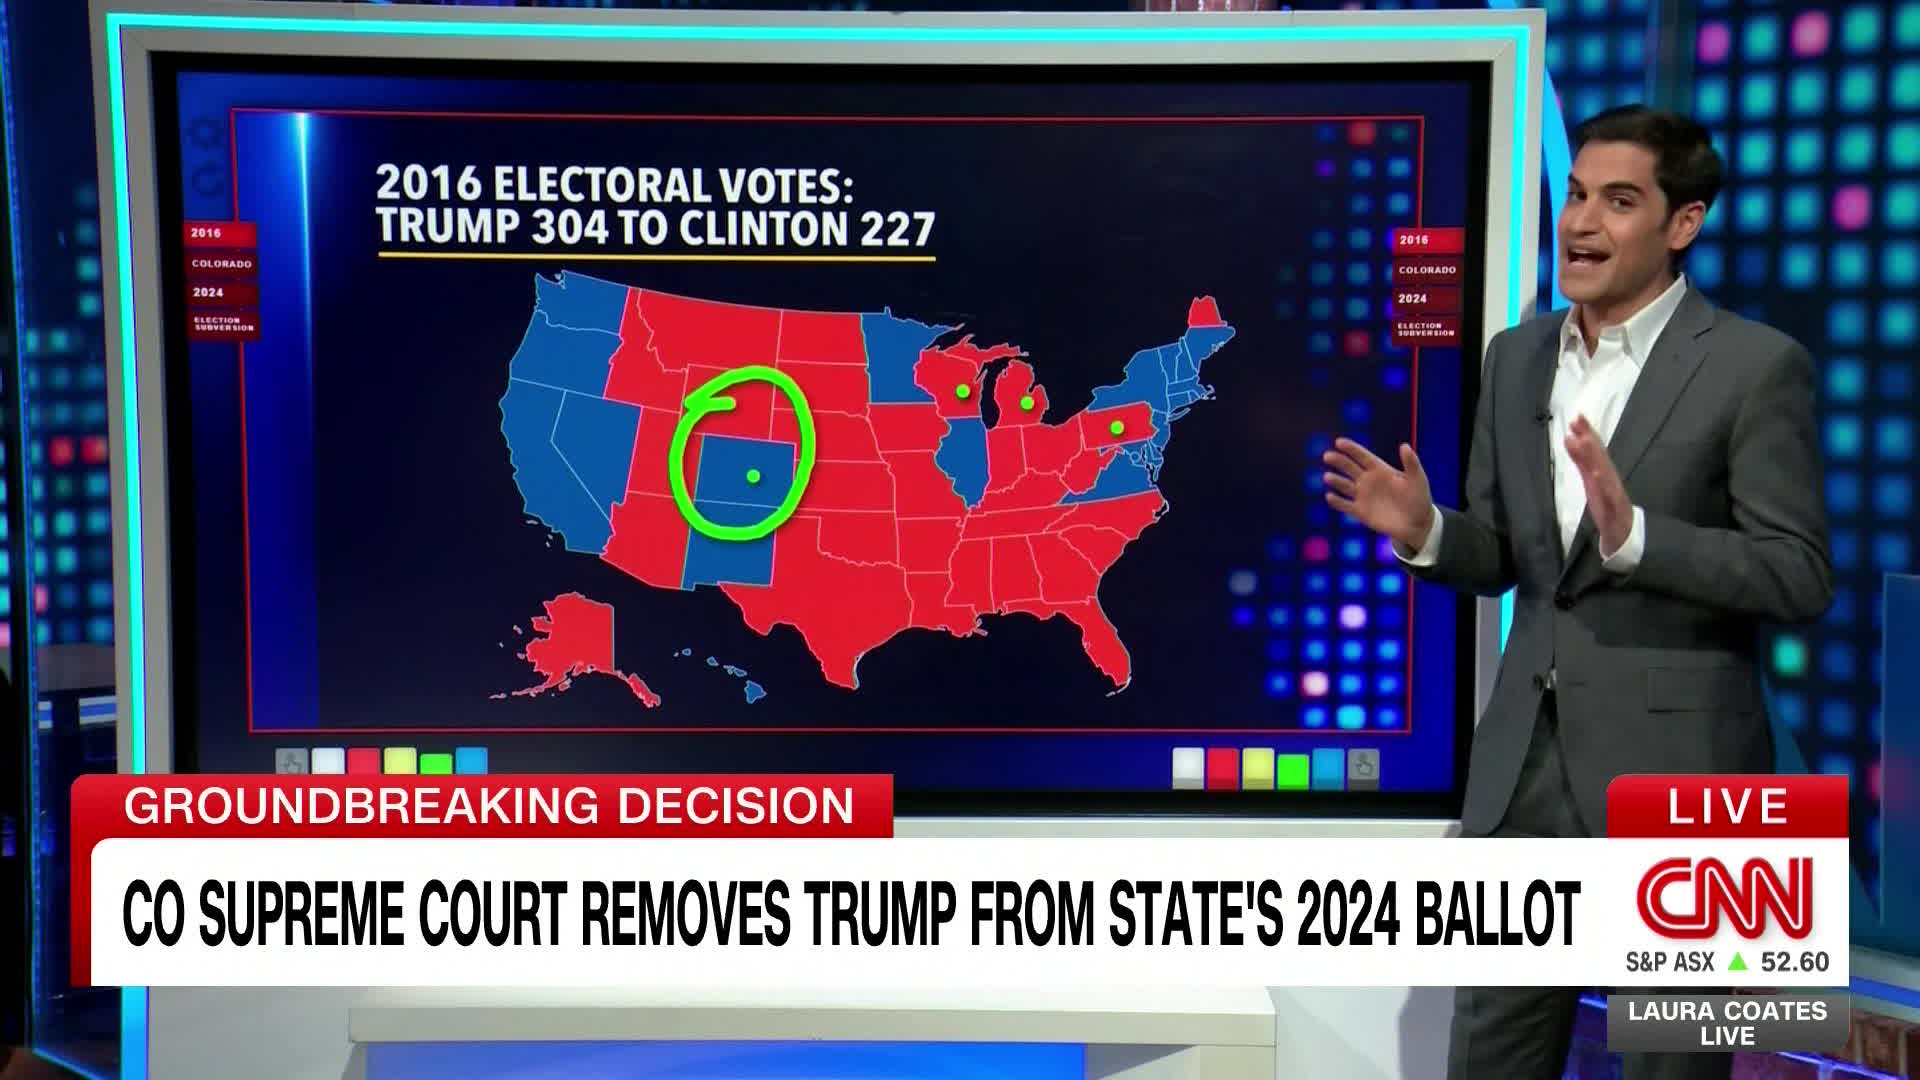 콜로라도주는 2020년은 물론이고 2016년 대선 때도 트럼프 후보가 패배한 곳이다.  지도상 표시된 곳이 콜로라도주로 민주당의 색인 파란색으로 표시돼 있다. 콜로라도주 대법원의 판결을 전하는 CNN 화면.